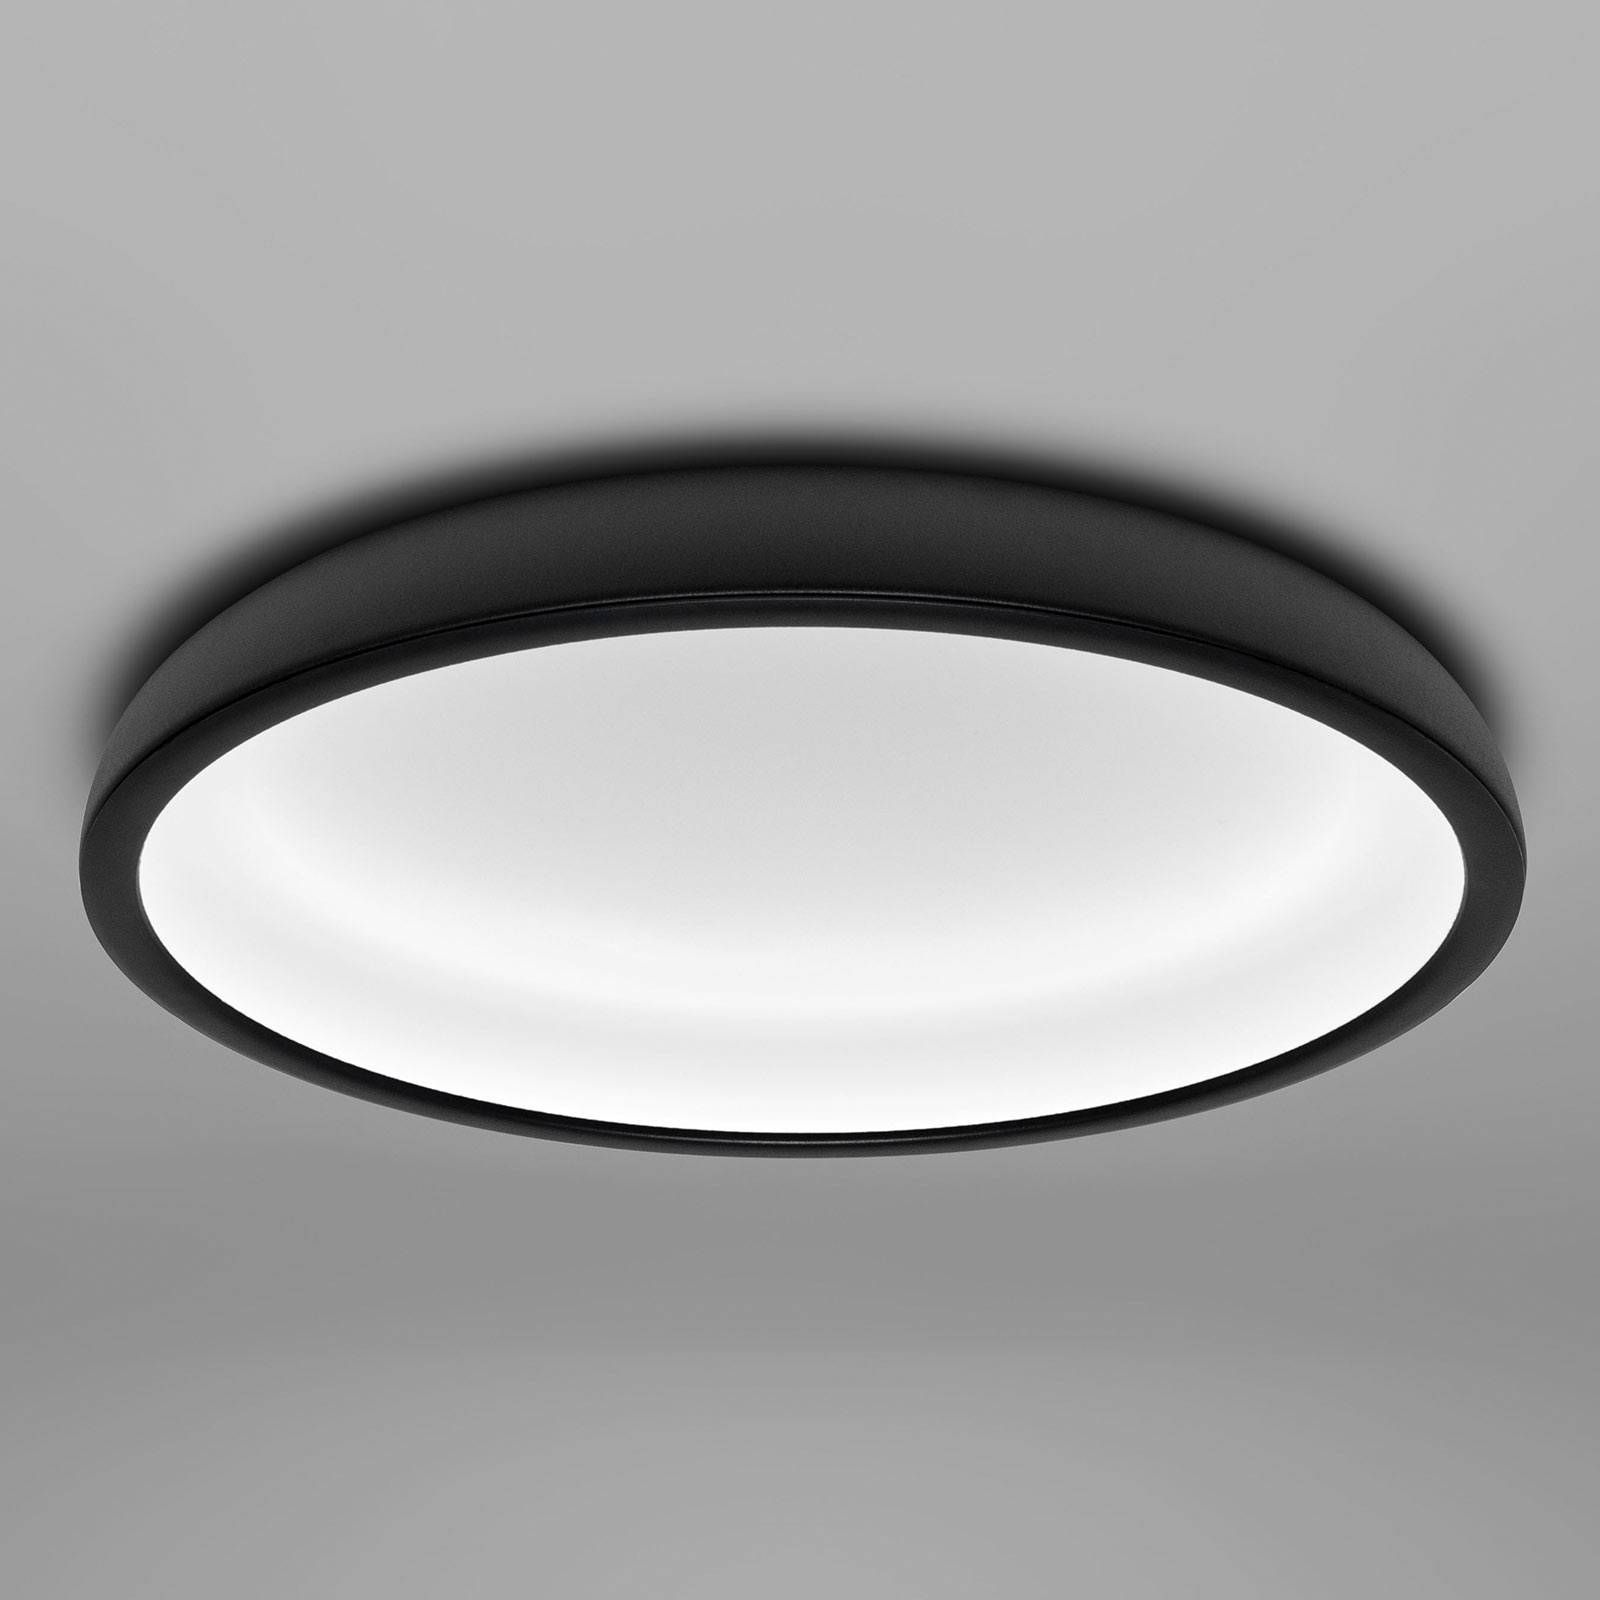 Stilnovo Stropné LED svietidlo Reflexio, Ø 46 cm, čierne, Chodba, železo, polykarbonát, 37W, K: 9.7cm